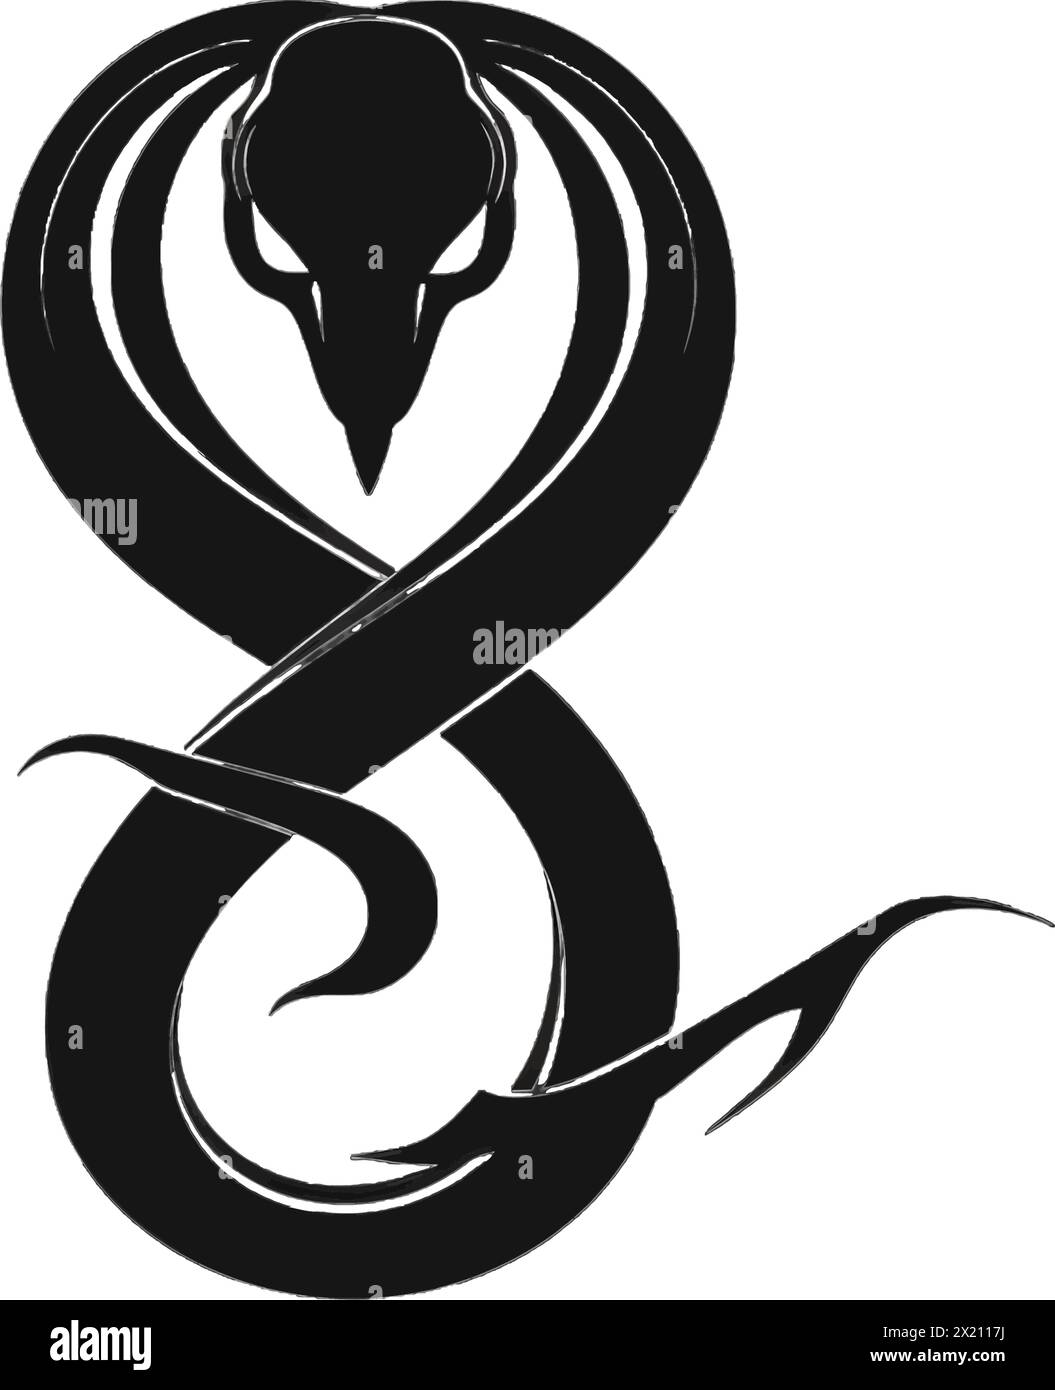 Illustration vectorielle d'un serpent en silhouette noire sur un fond blanc propre, capturant les formes gracieuses de ce vecteur. Illustration de Vecteur